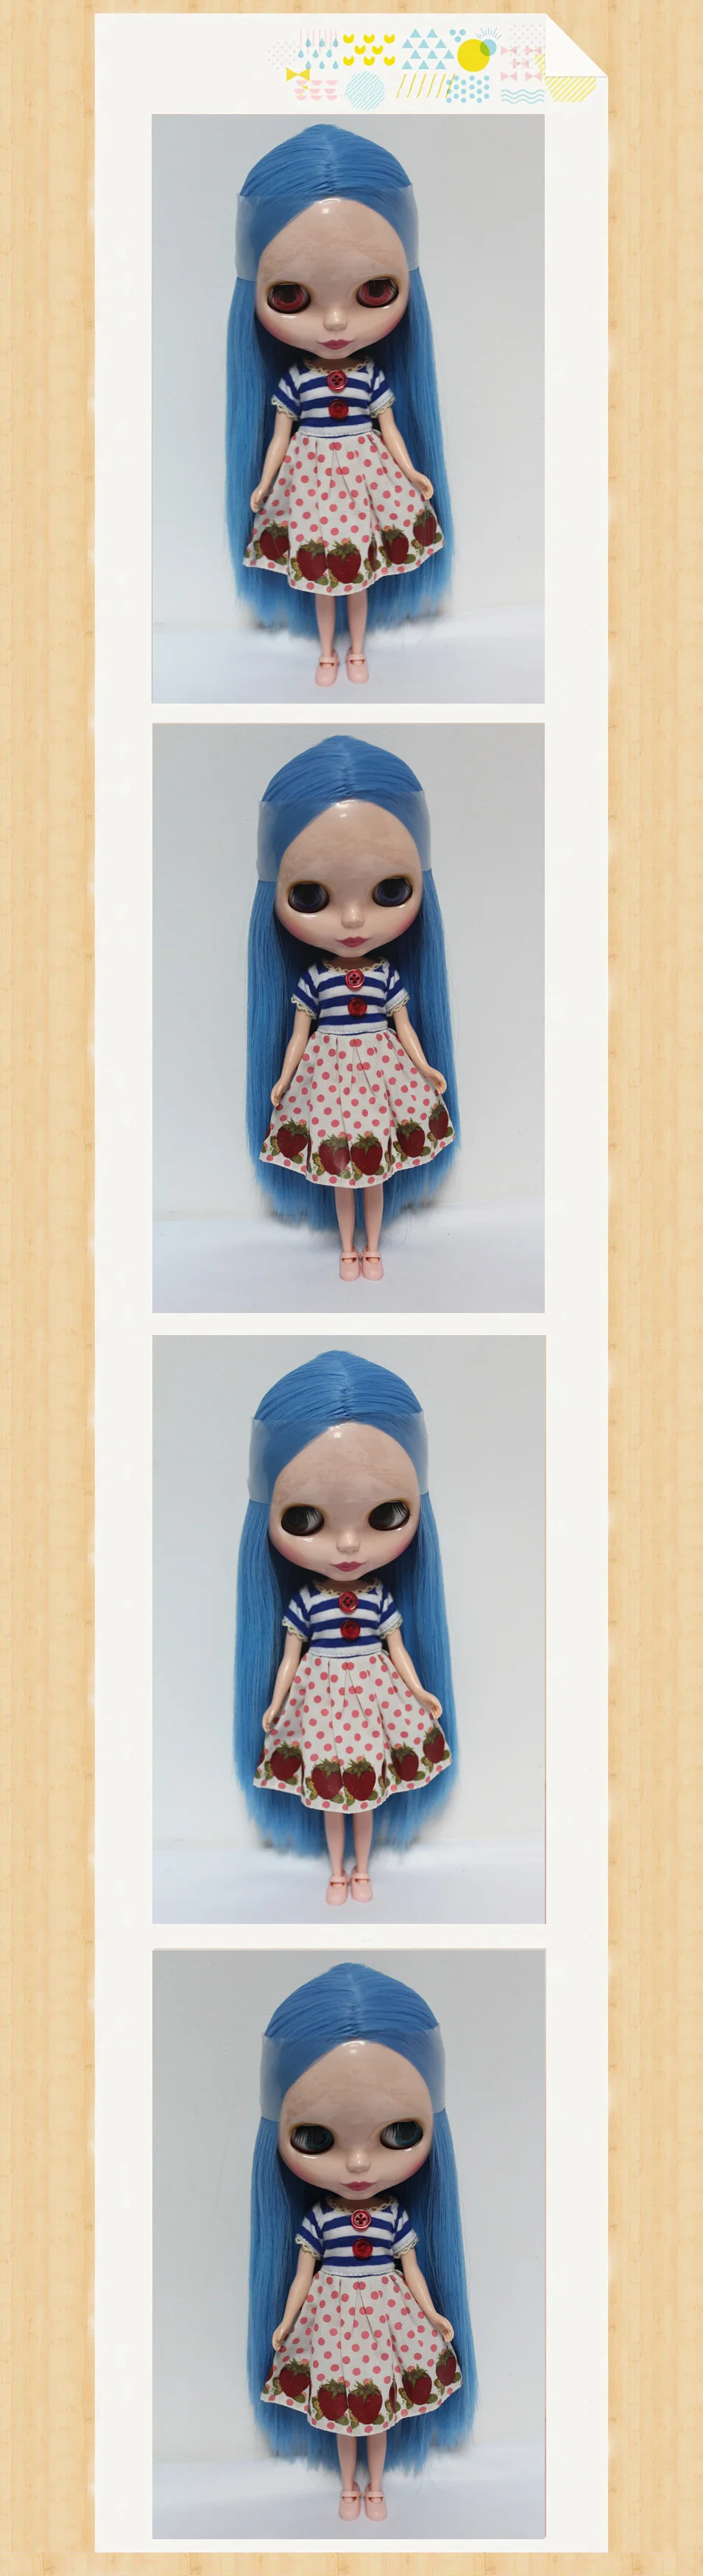 Большая скидка, RBL-72DIY, Обнаженная кукла, подарок на день рождения для девочки, 4 цвета, большие глаза, куклы с красивыми волосами, милая игрушка